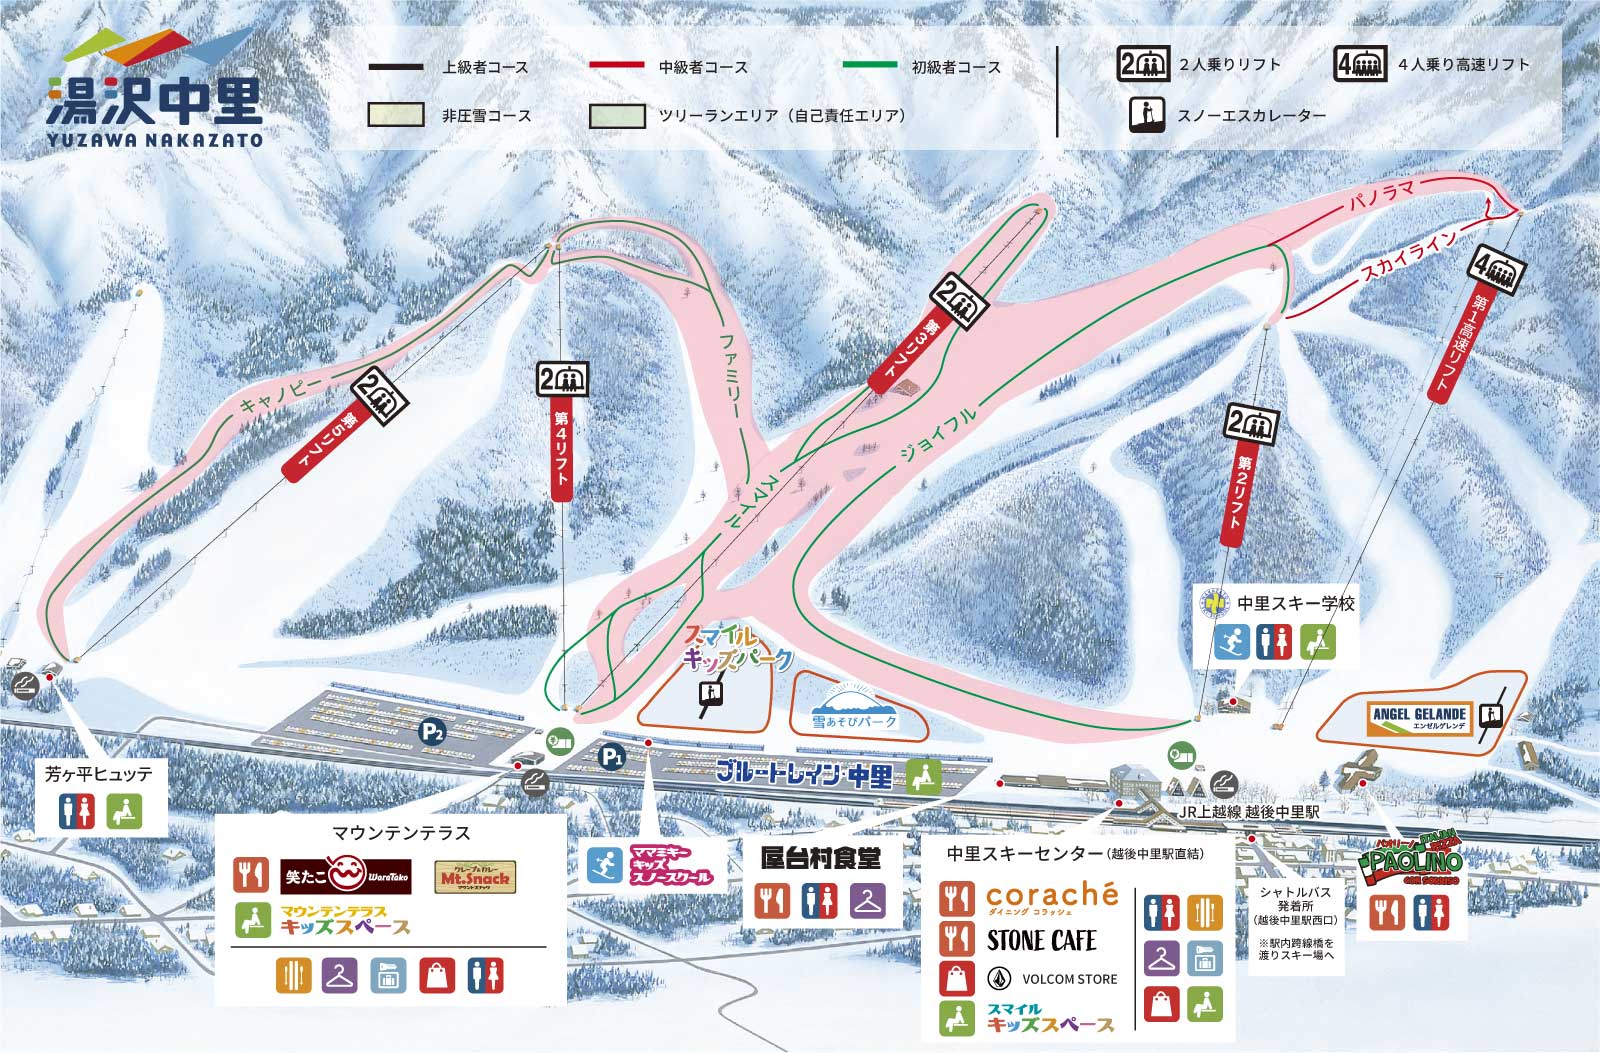 湯沢中里スノーリゾート リフト券 半額 湯沢 割引券 - スキー場